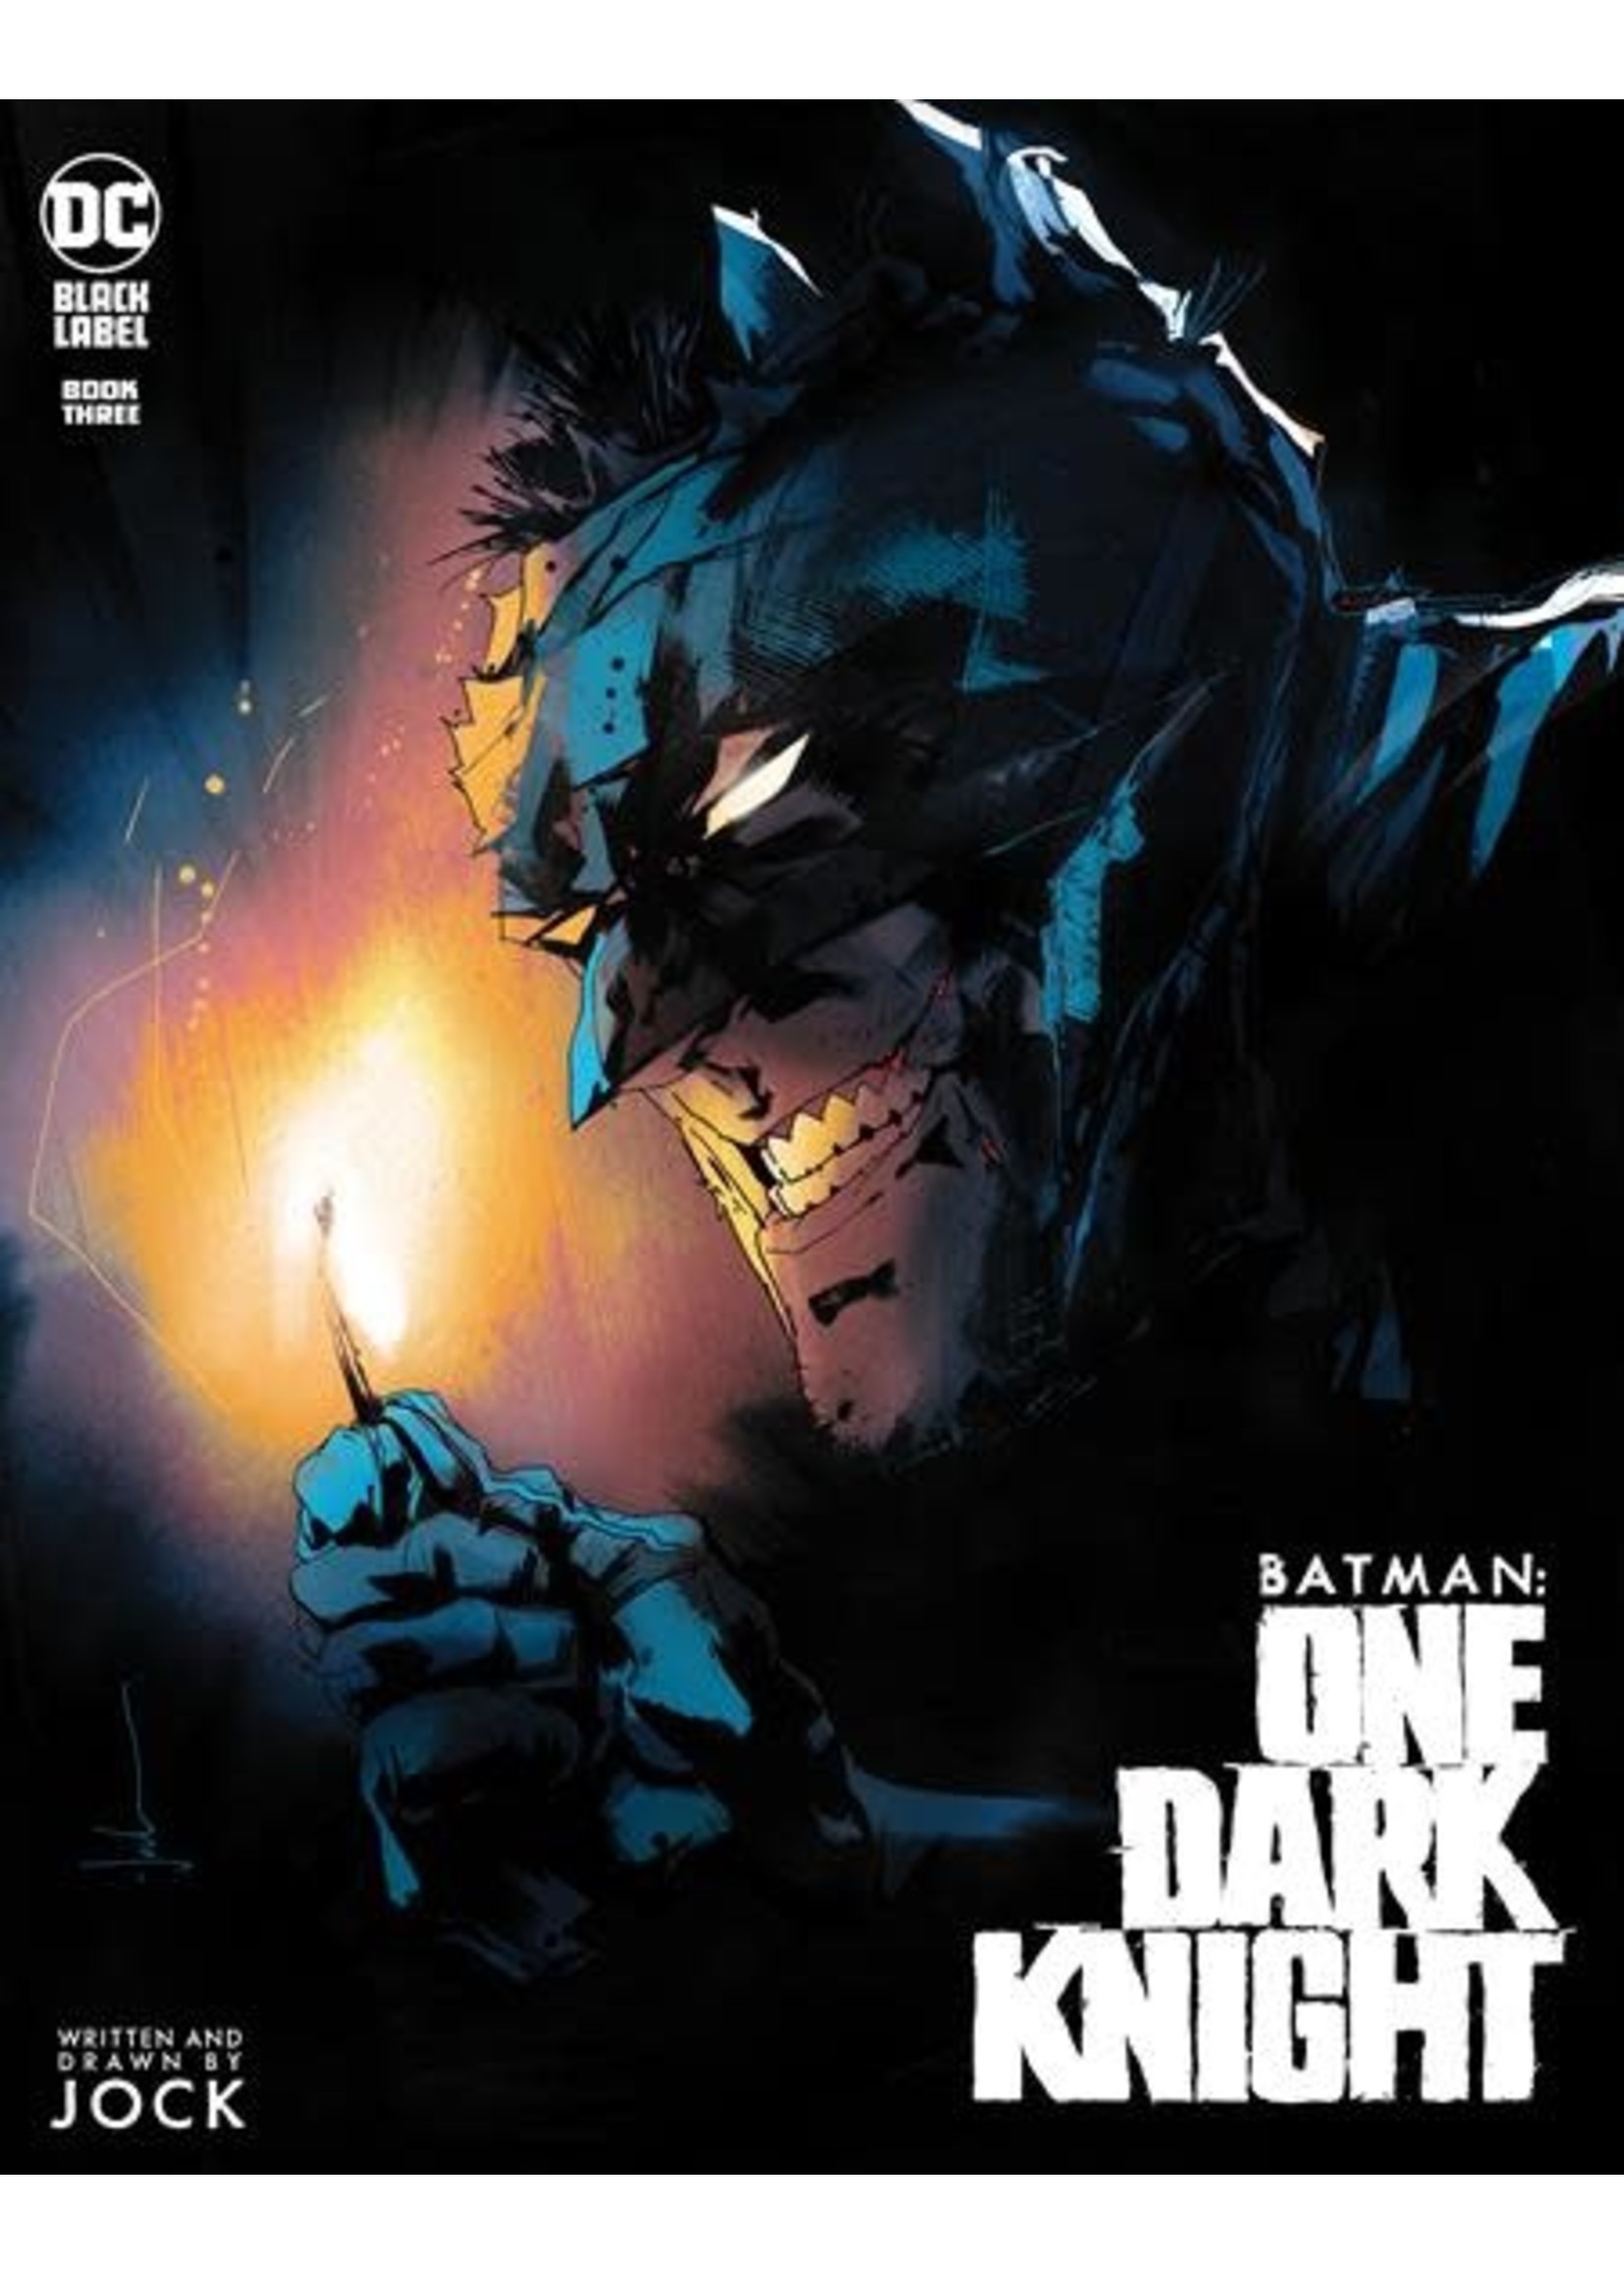 DC COMICS BATMAN ONE DARK KNIGHT #3 (OF 3) CVR A JOCK